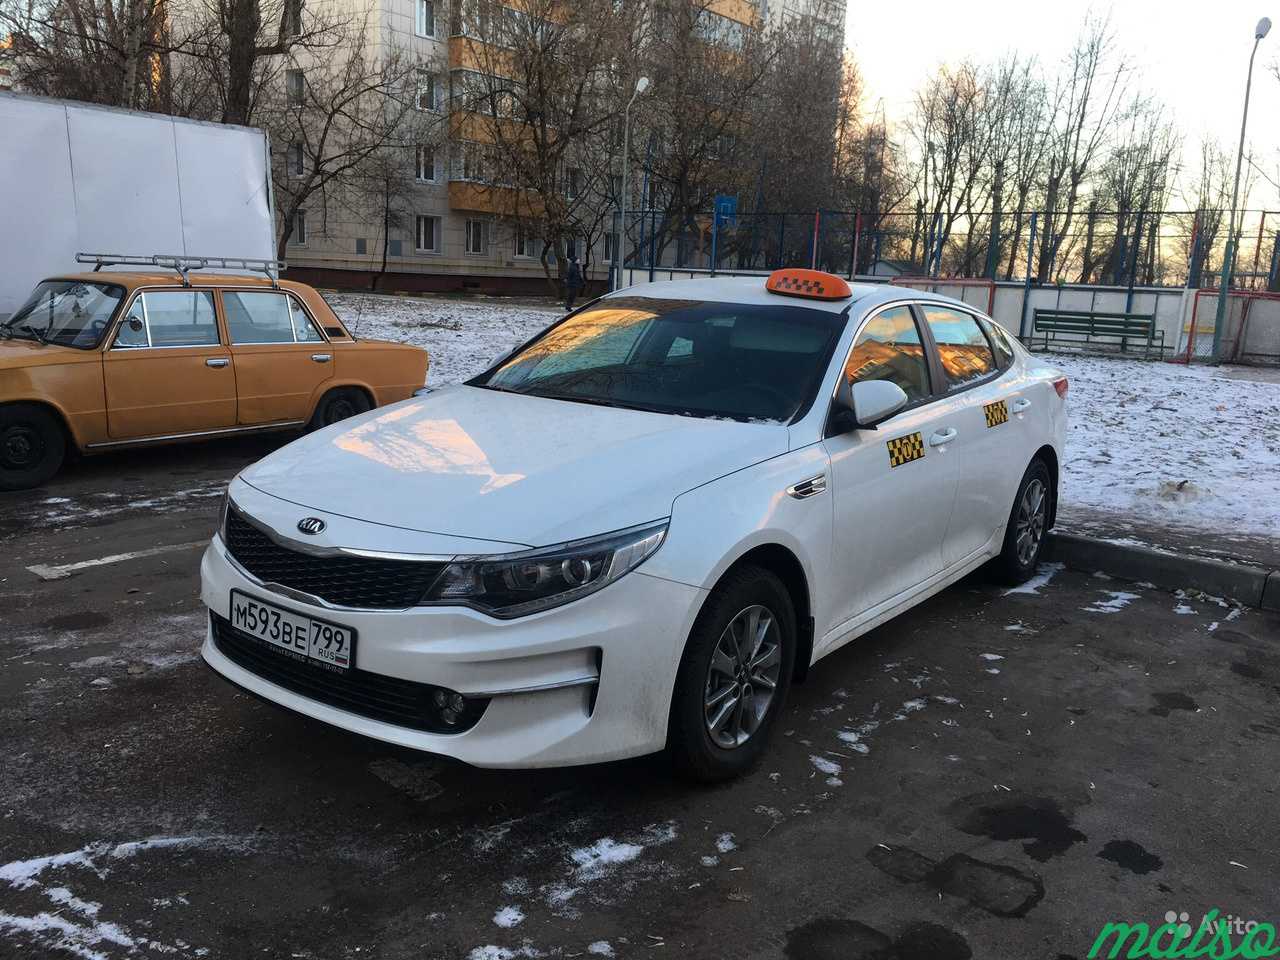 Машина для работы/аренда Авто/ аренда такси в Москве. Фото 2